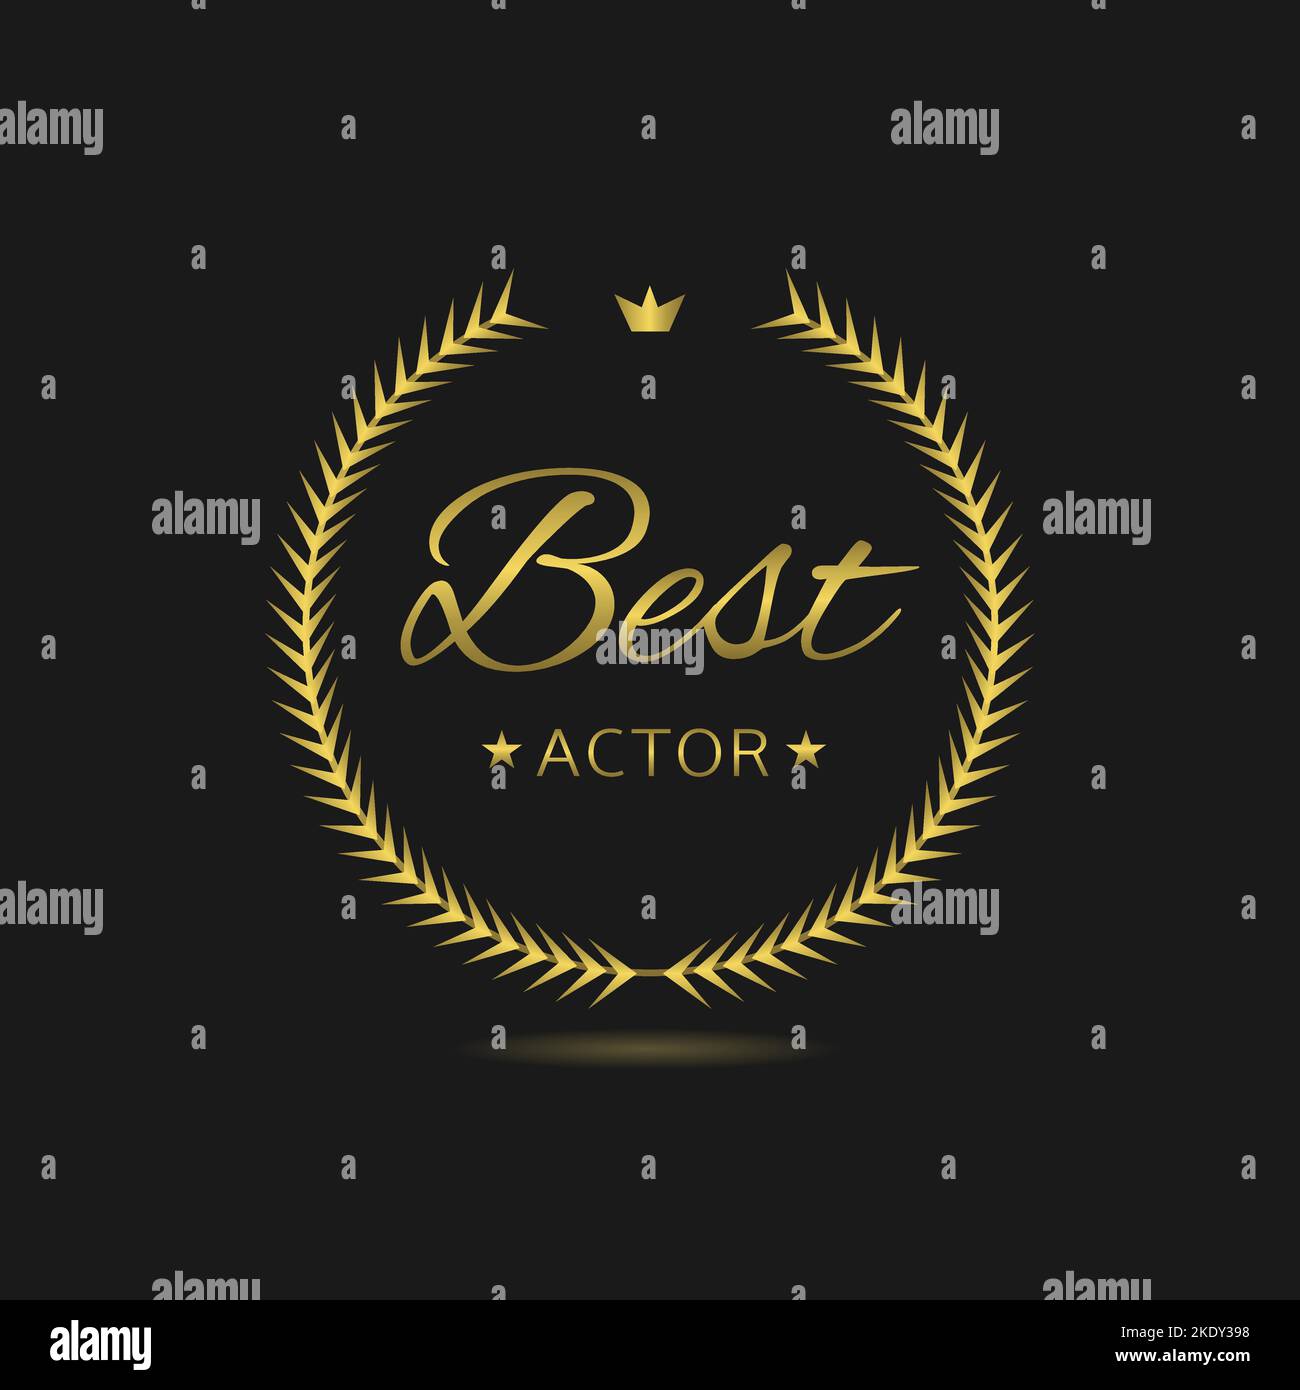 Best actor Golden laurel wreath label Stock Vector